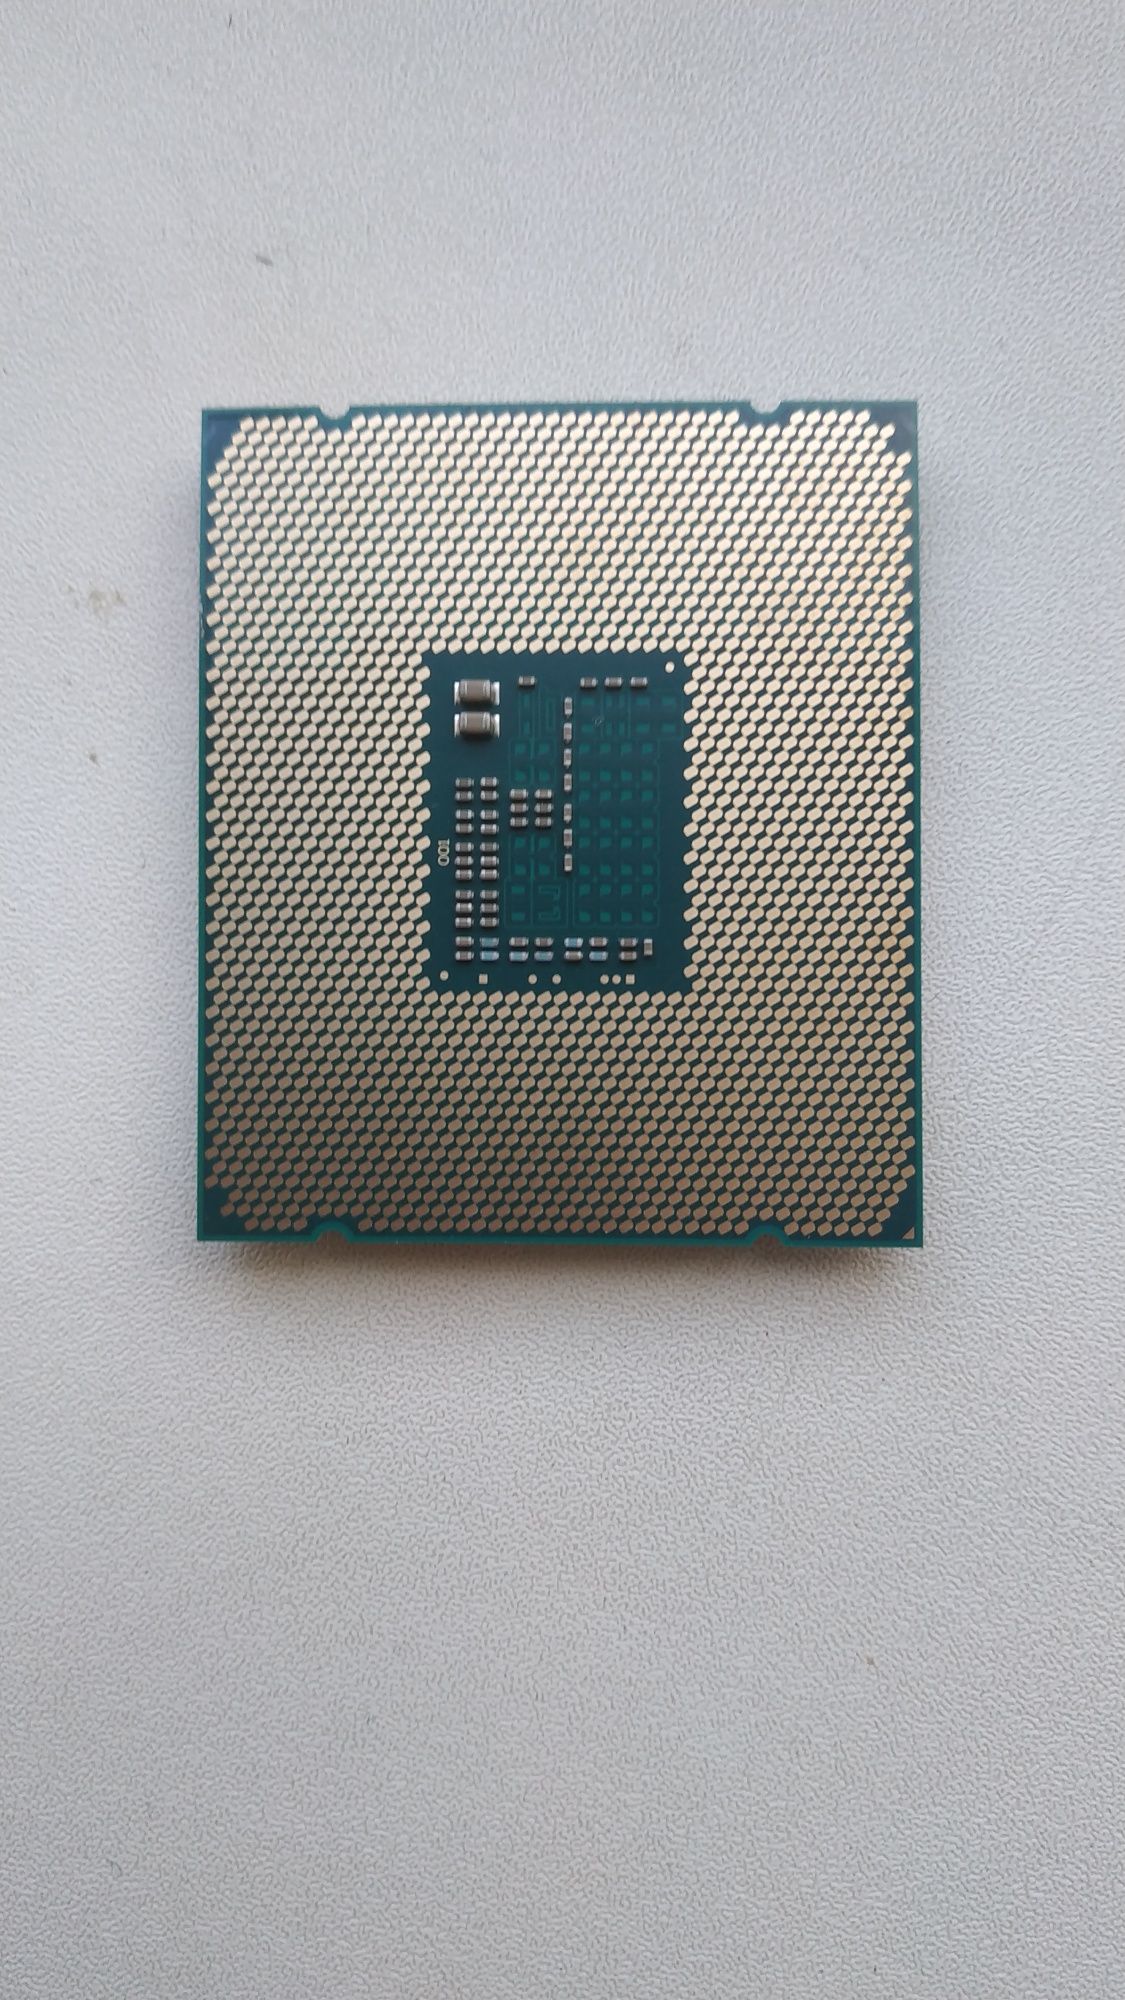 Процесор Xeon E5 2620 V3